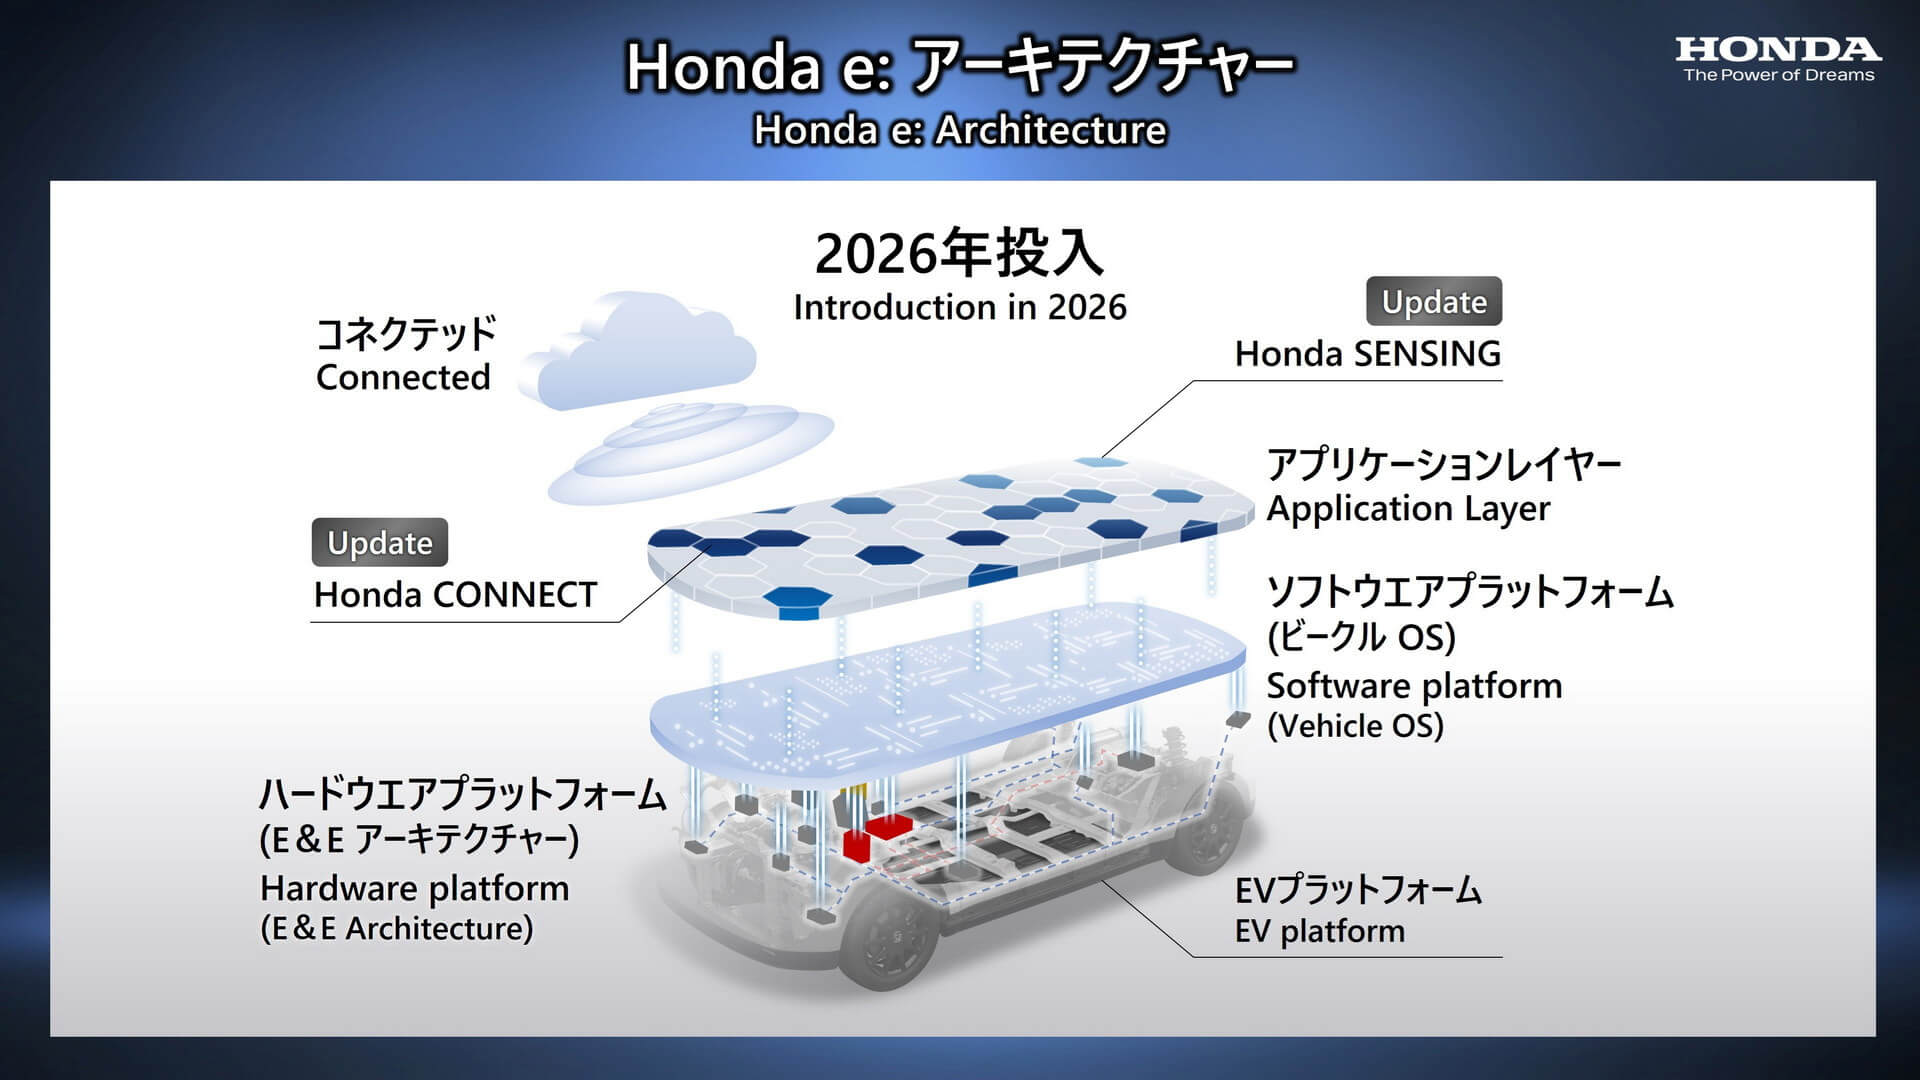 Planos de eletrificação da Honda (1)